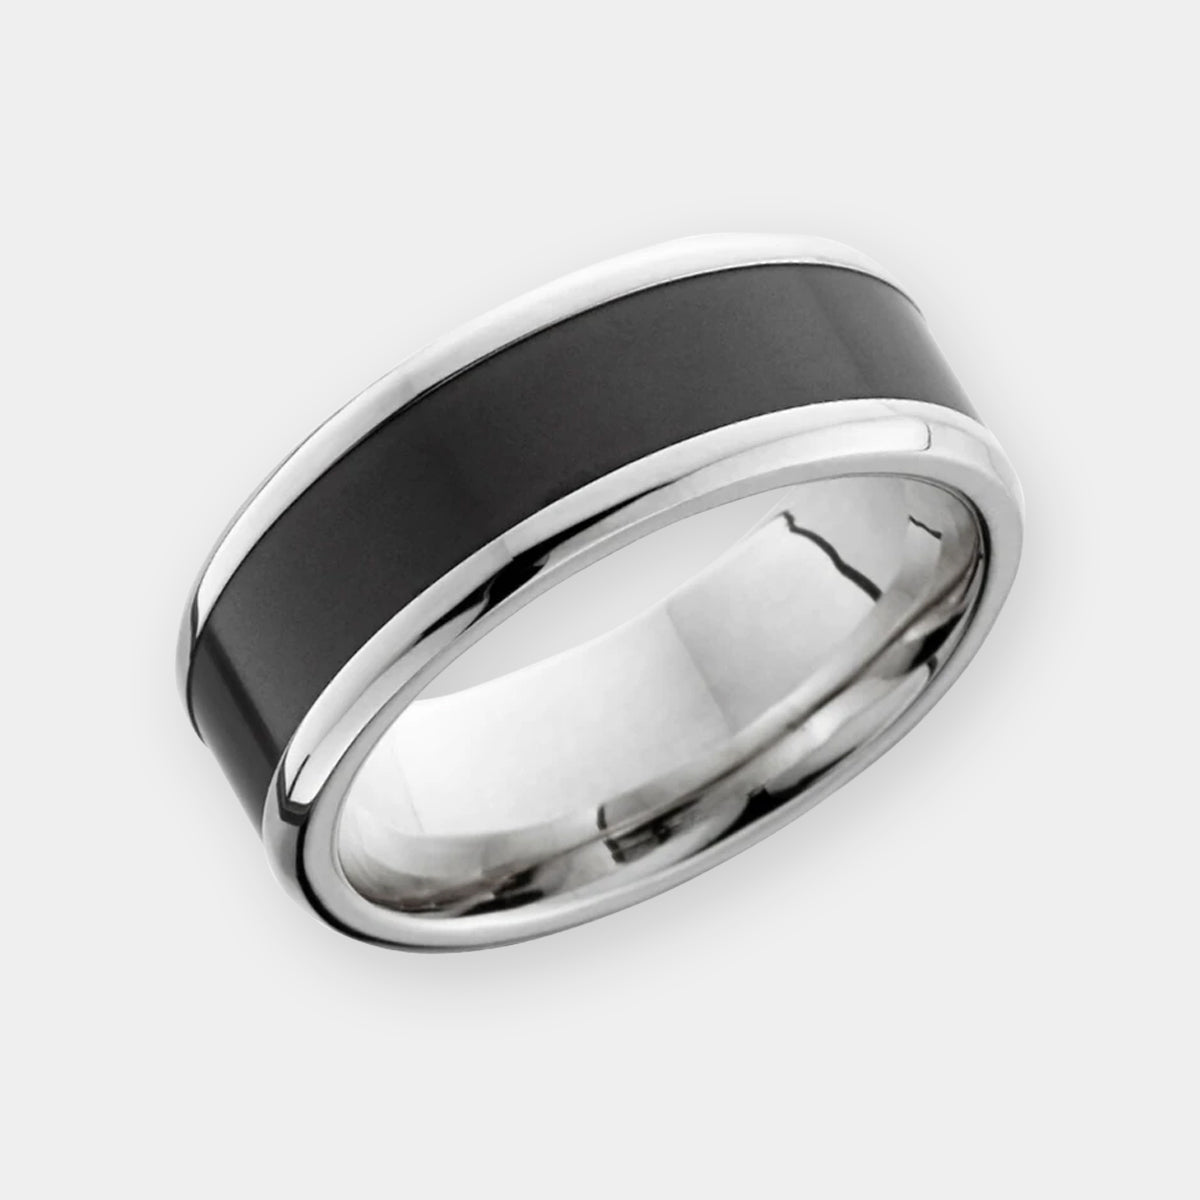 Elysium Black Diamond Ring: Achilles 8mm Titanium Ring w/ Elysium Diamond Inlay | Solid Black Diamond Wedding Rings For Men | Men's Black Wedding Band